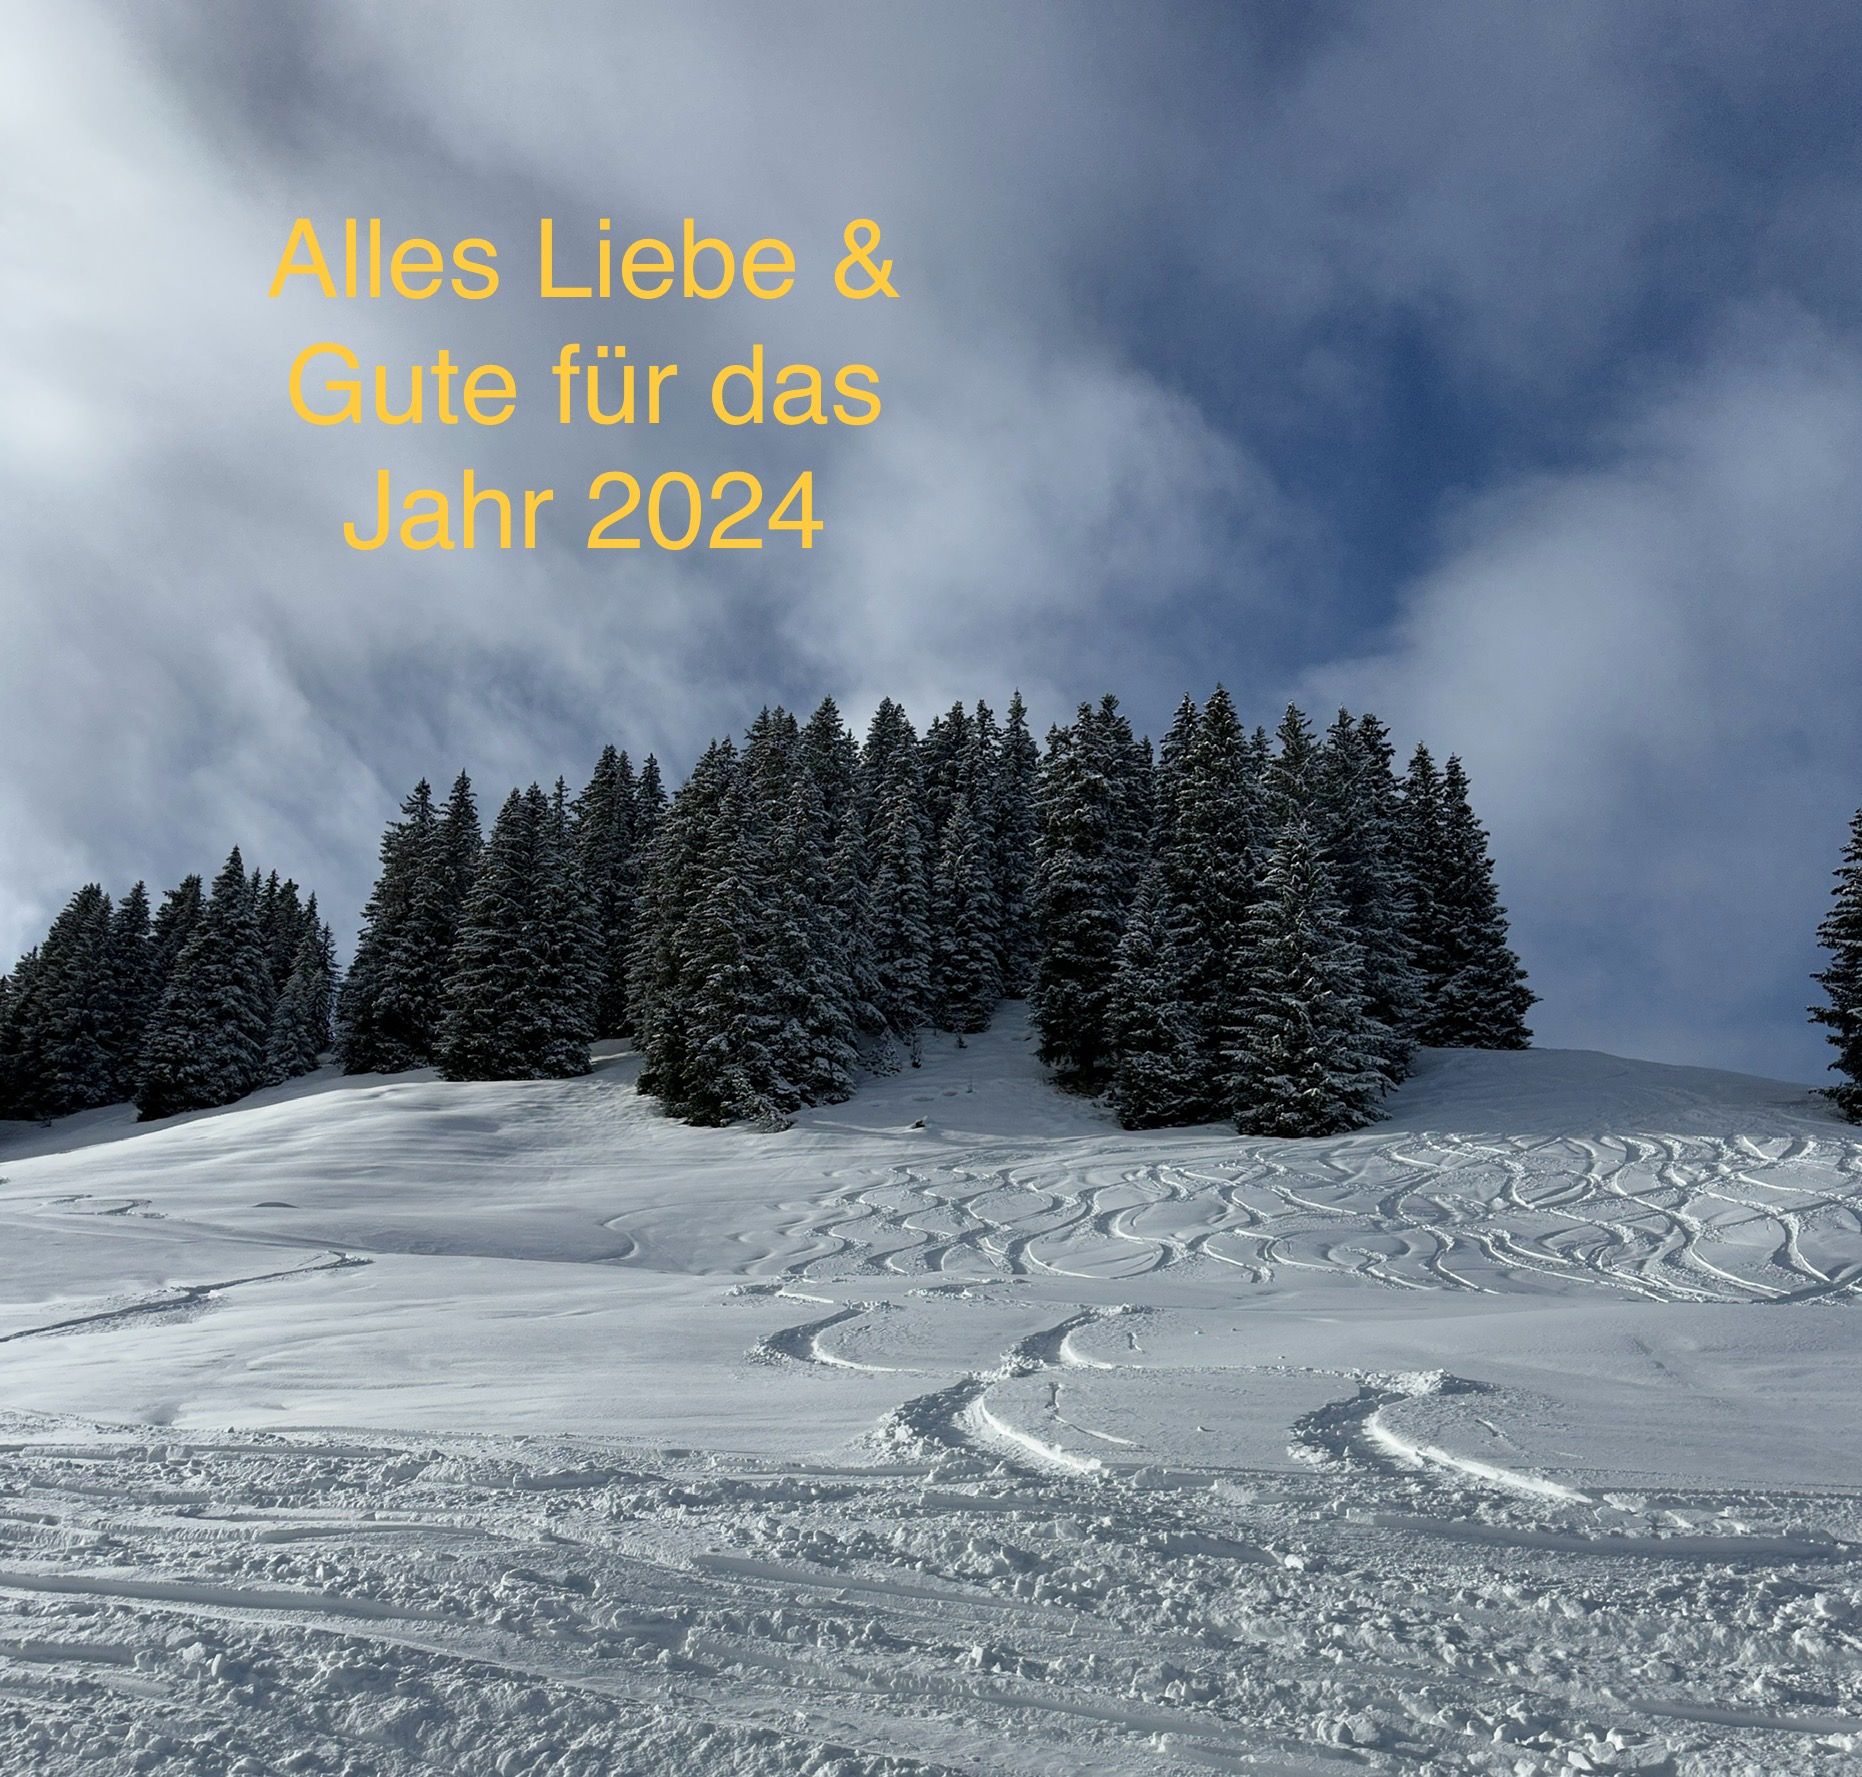 Spuren im Schnee, alles gute für ein erfreuliches 2024!